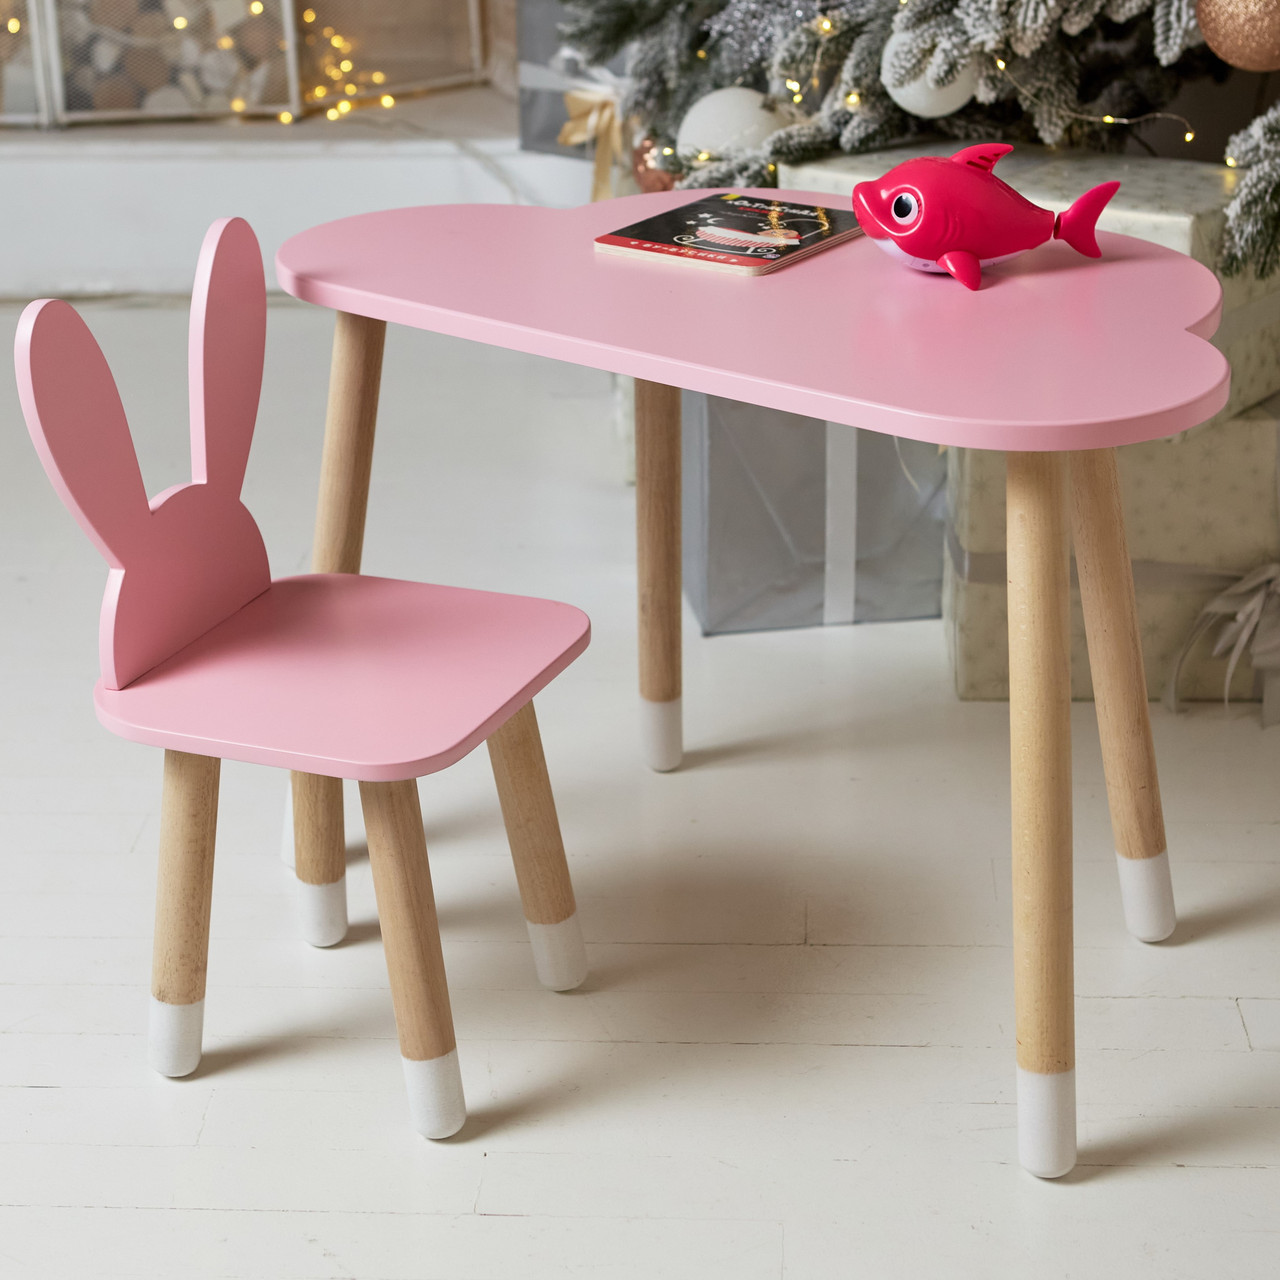 Дитячий столик хмарка і стільчик вушка зайчика рожеві. Столик для ігор, занять, їжі, фото 1